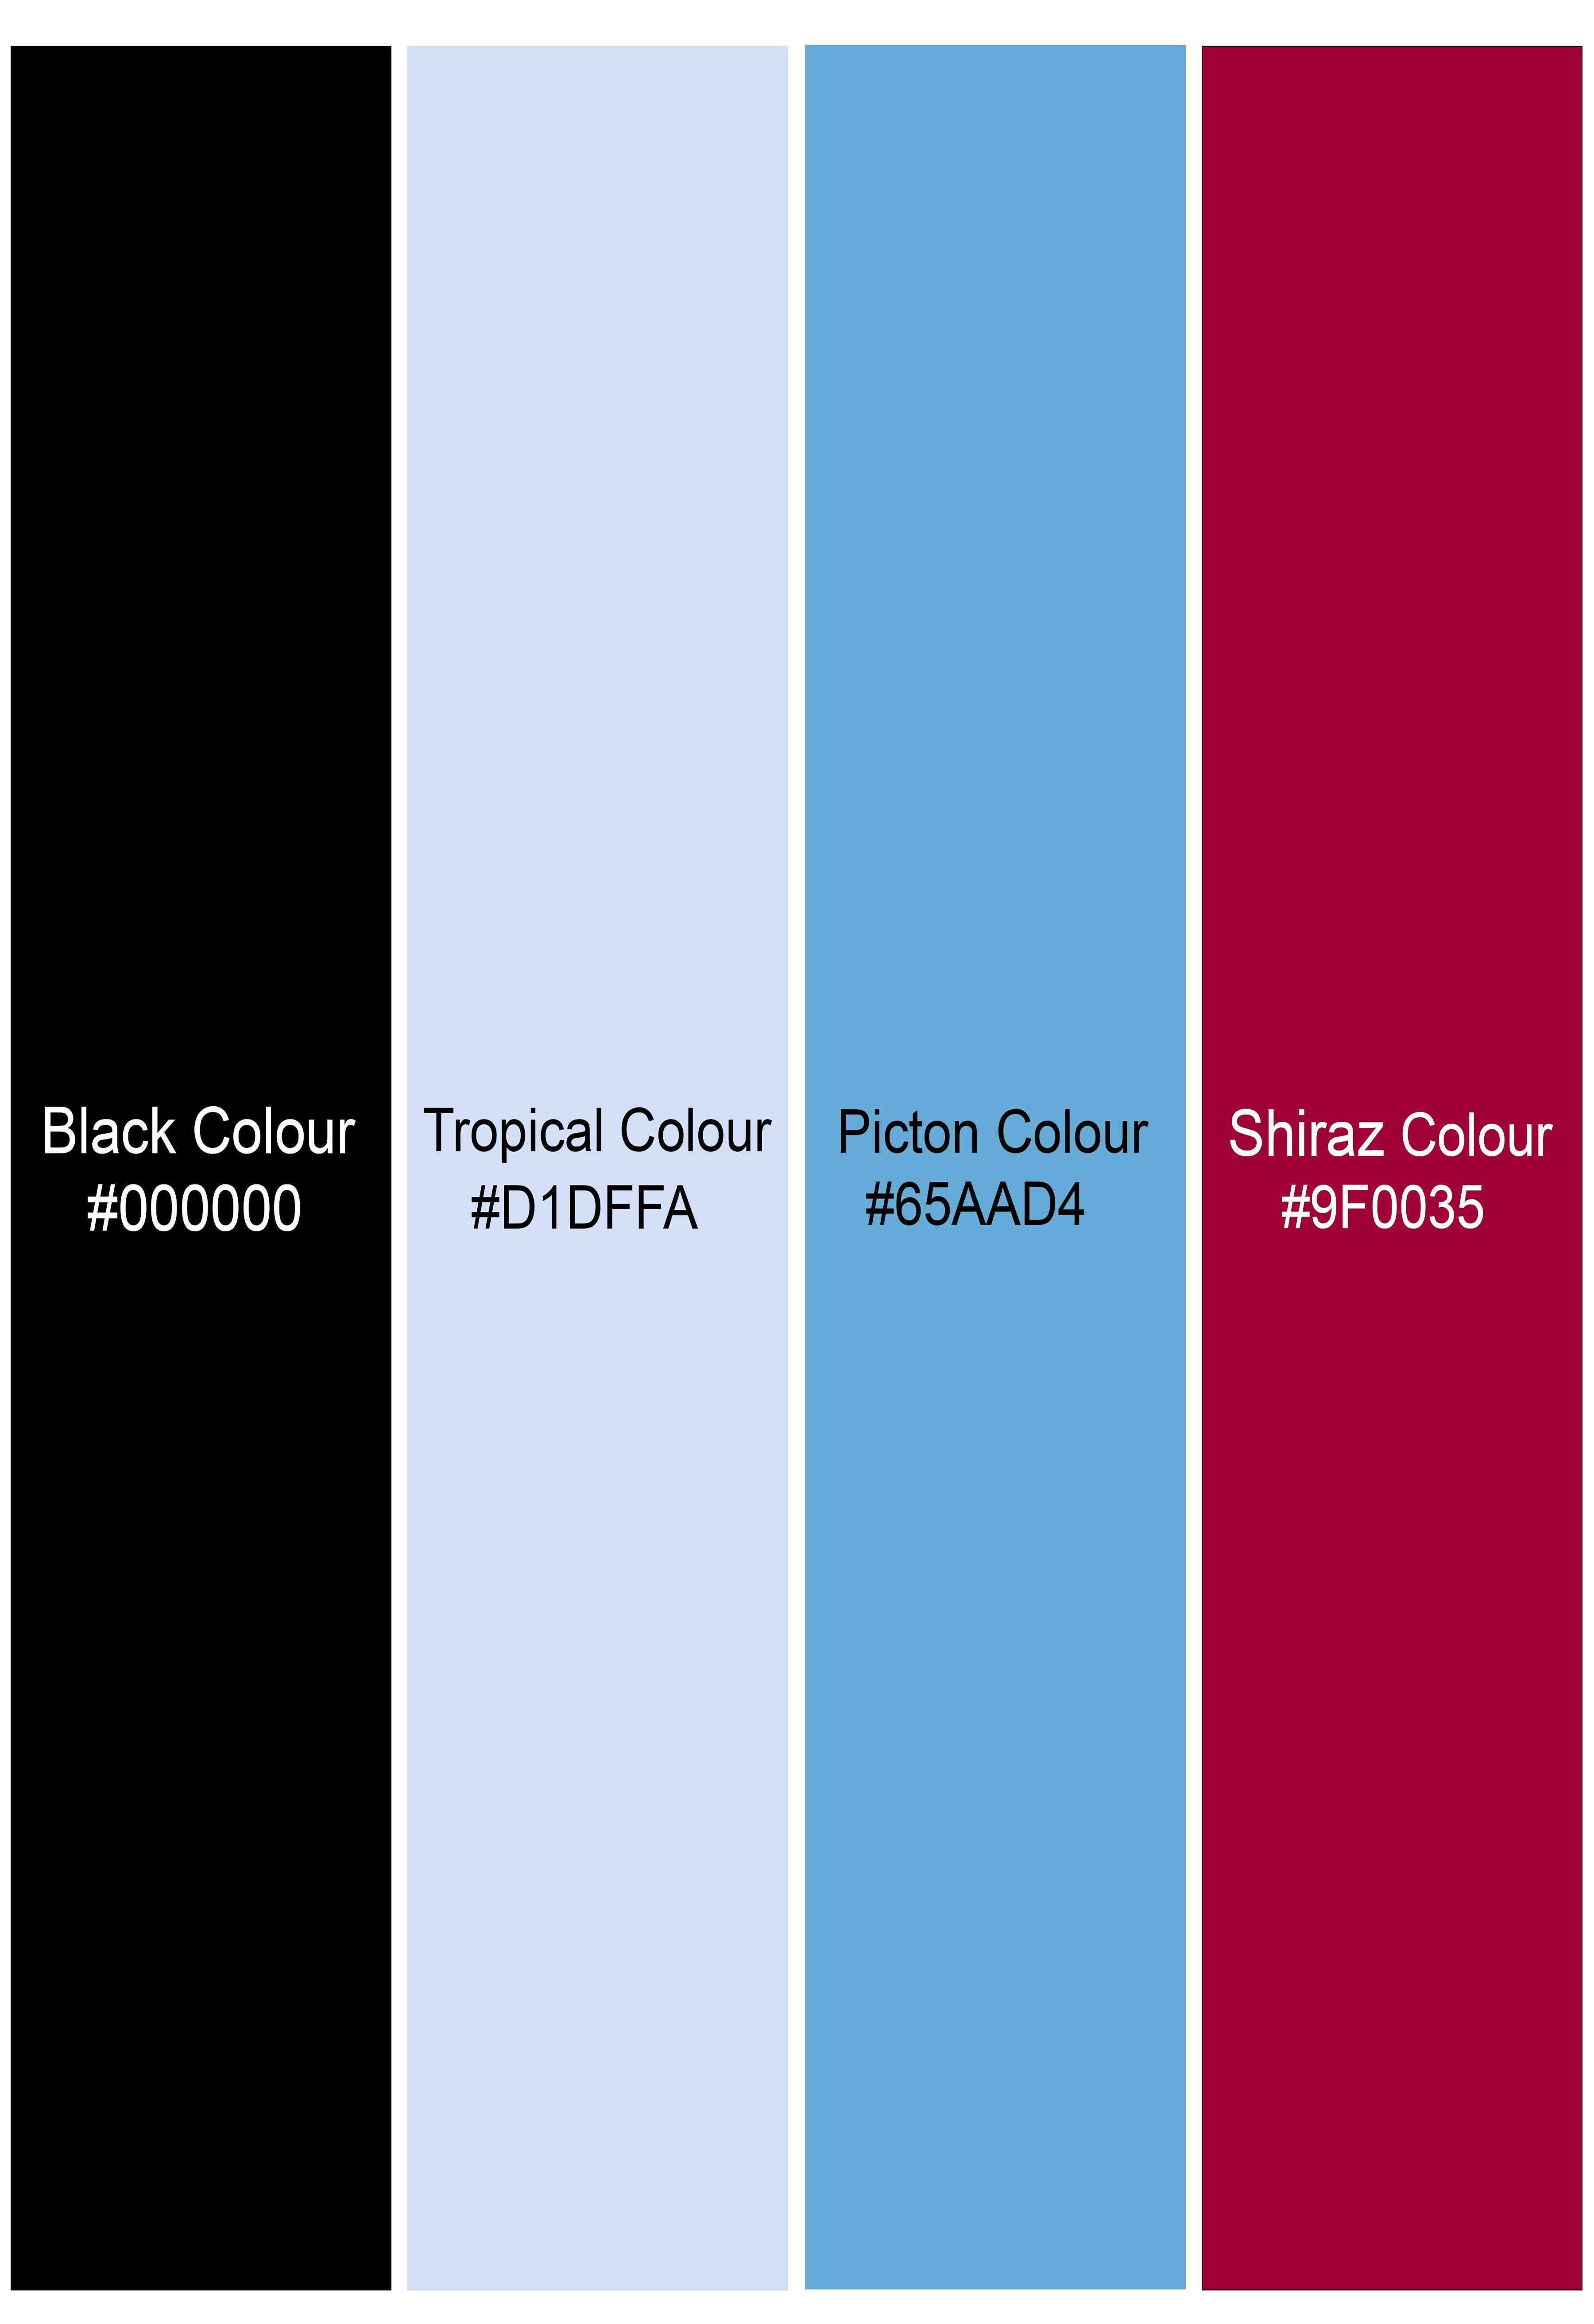 Jade Black with Tropical Gray Multicolor Premium Tencel Shorts SR287-28, SR287-30, SR287-32, SR287-34, SR287-36, SR287-38, SR287-40, SR287-42, SR287-44